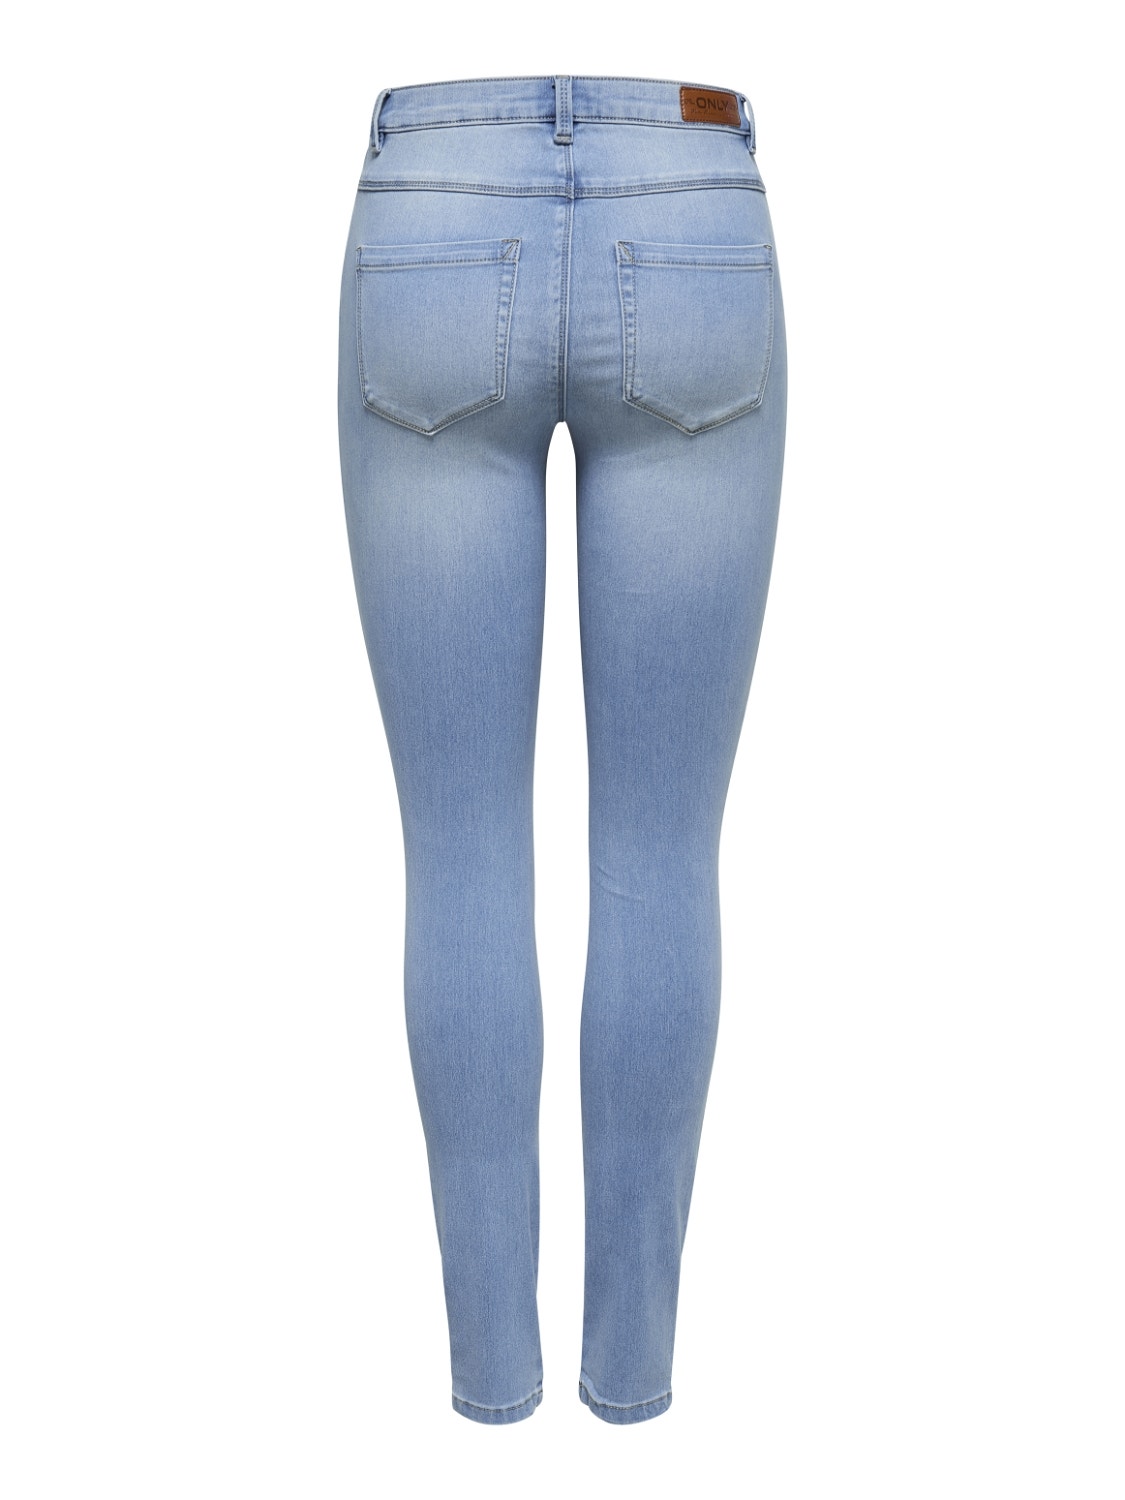 ONLY onlroyal hw sk jeans bj13333 noos -Light Blue Denim - 15169037